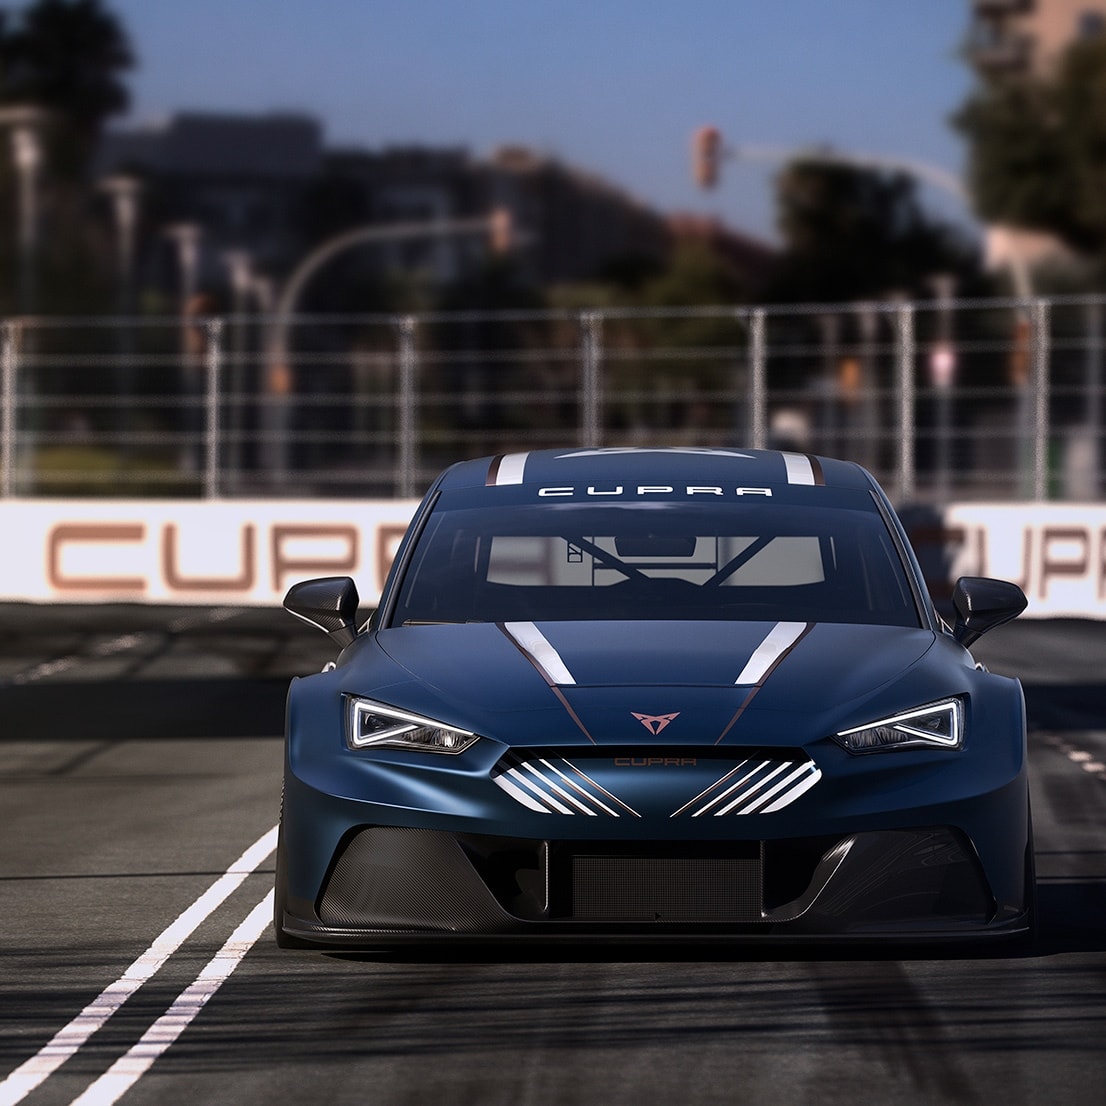 Auto elettrica da corsa: Nuova CUPRA Leon E-racer: design esterno – firma luminosa a LED frontale